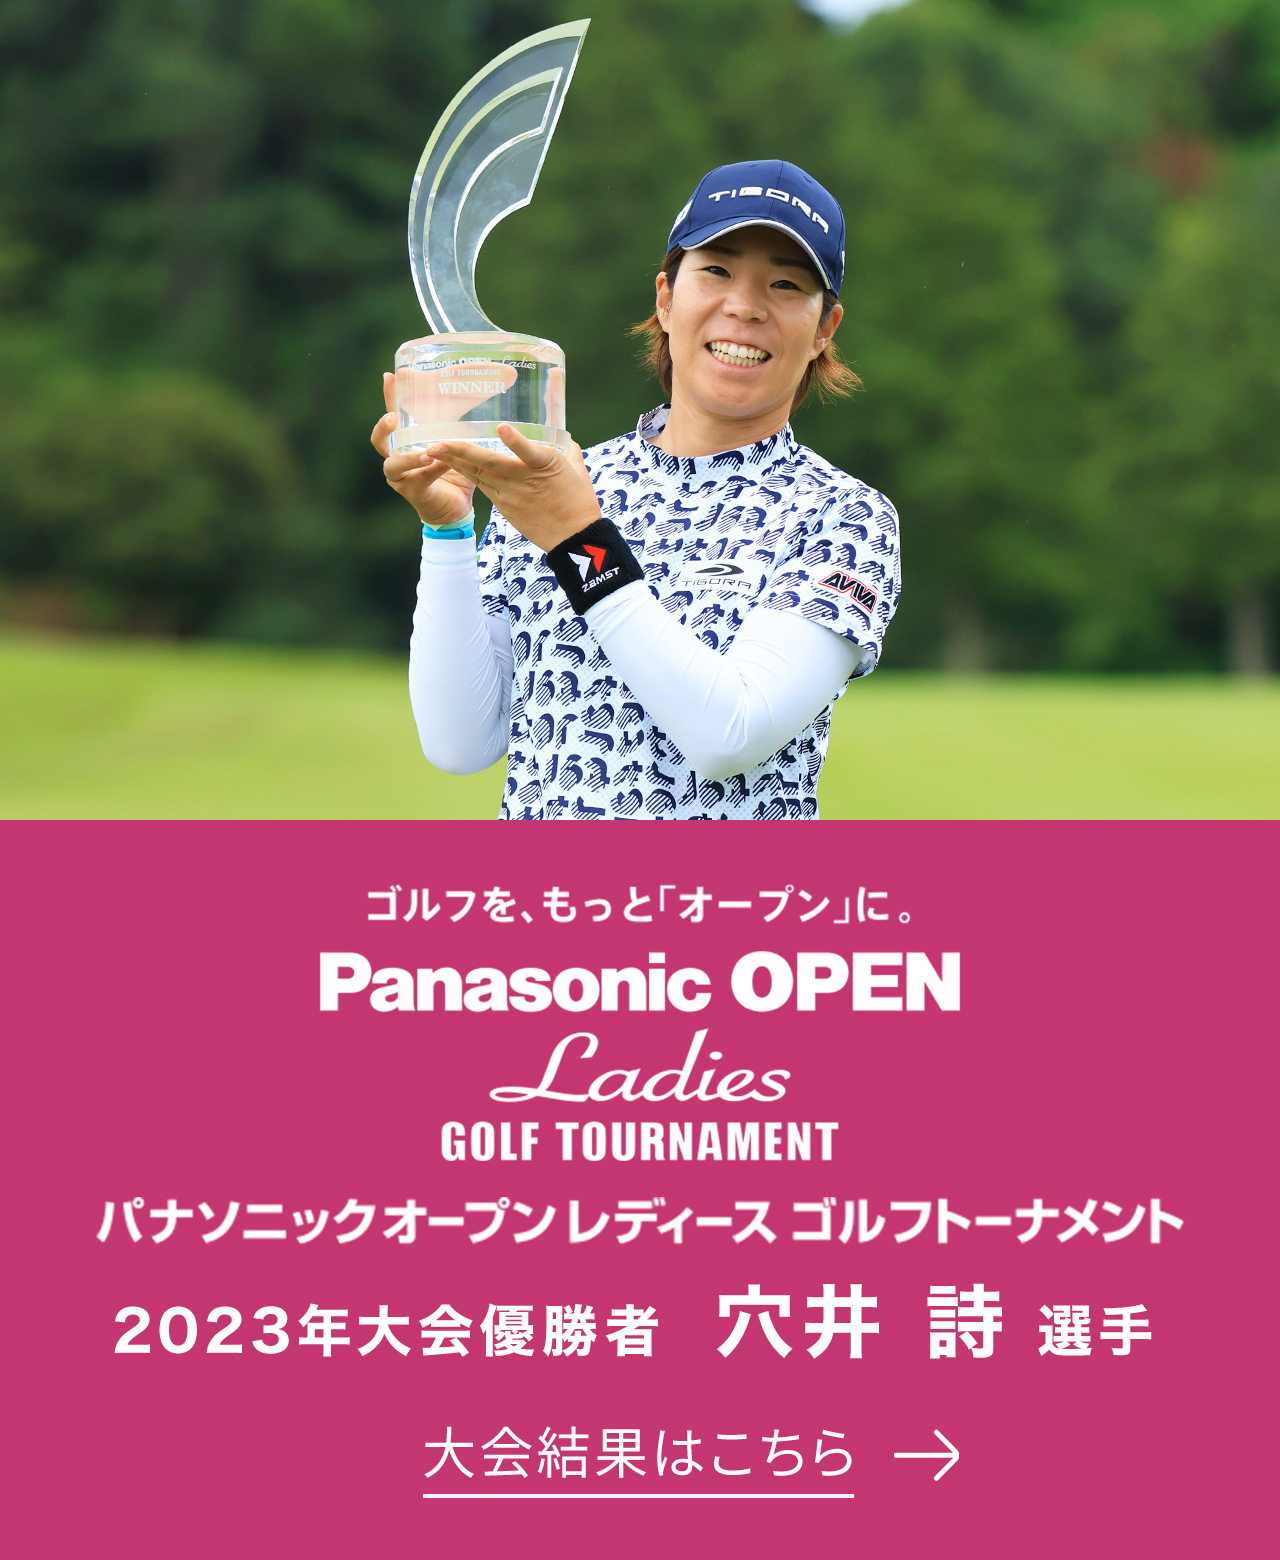 ゴルフを、もっと「オープン」に。 Panasonic OPEN Ladies GOLF TOURNAMENT パナソニックオープンレディース ゴルフトーナメント 2023年大会優勝者 穴井 詩選手 大会結果はこちら